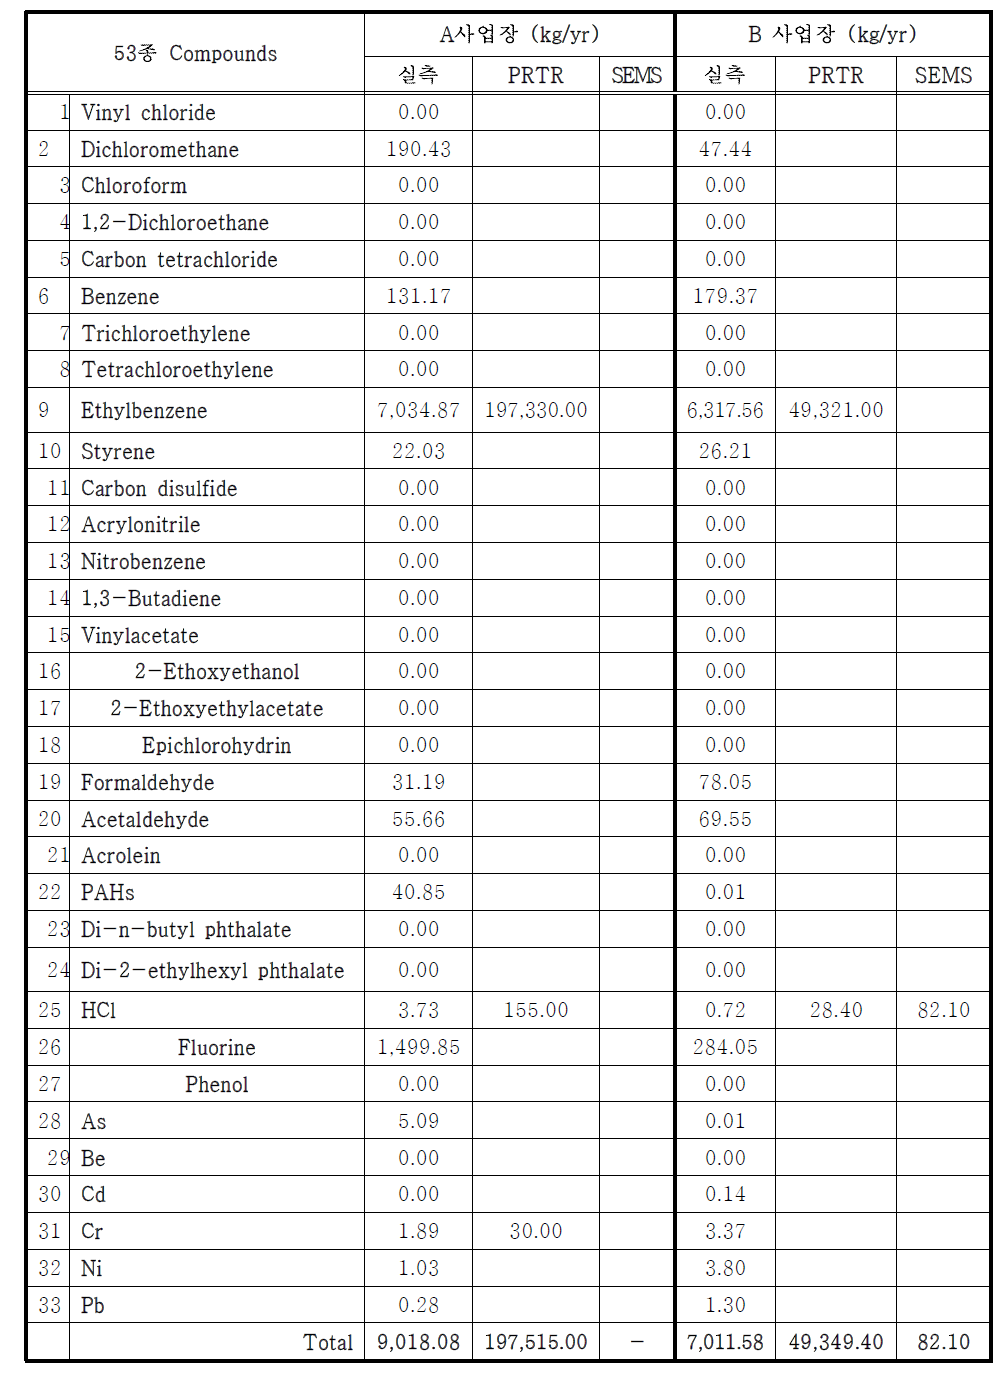 강선 제조업체의 배출량산정방법별 53종HAPs 배출량 비교